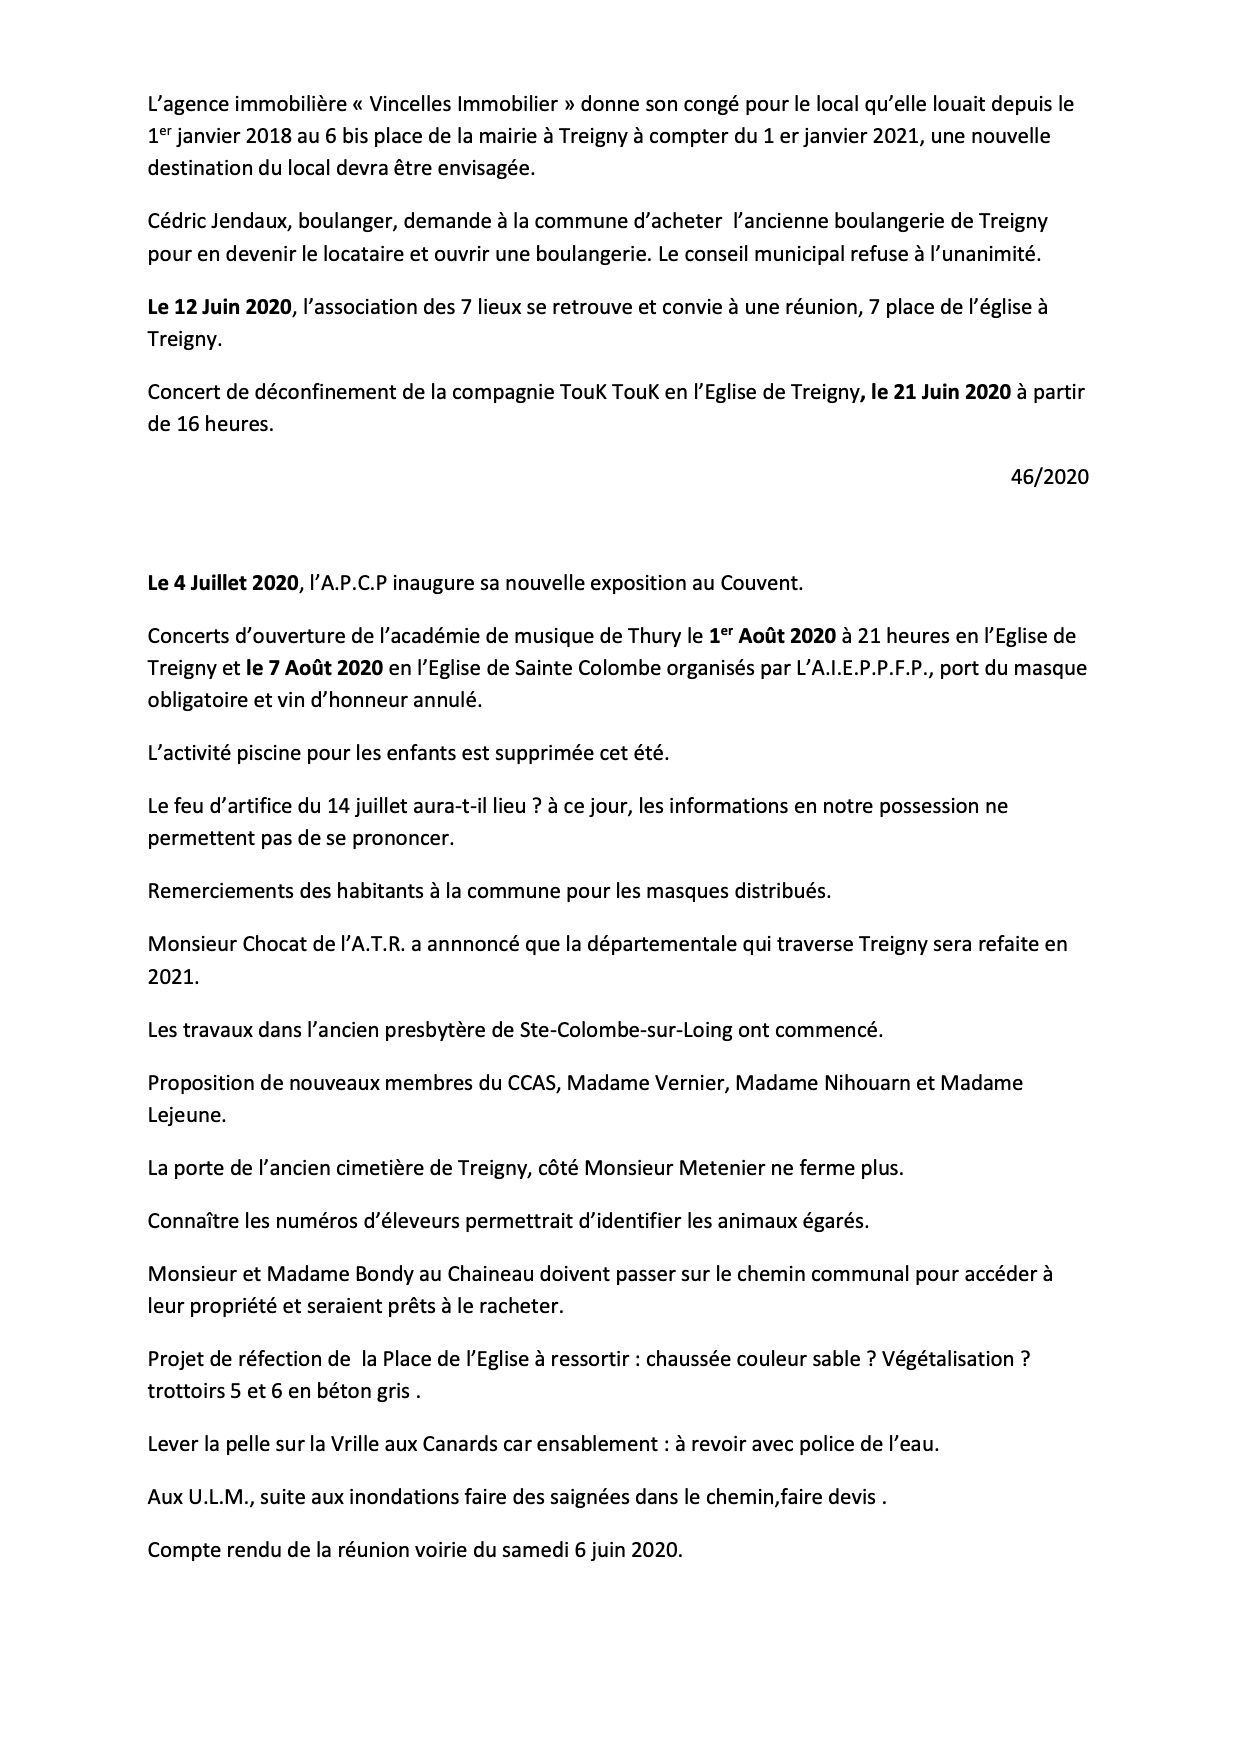 CRCM-du-11-06-2020-page5